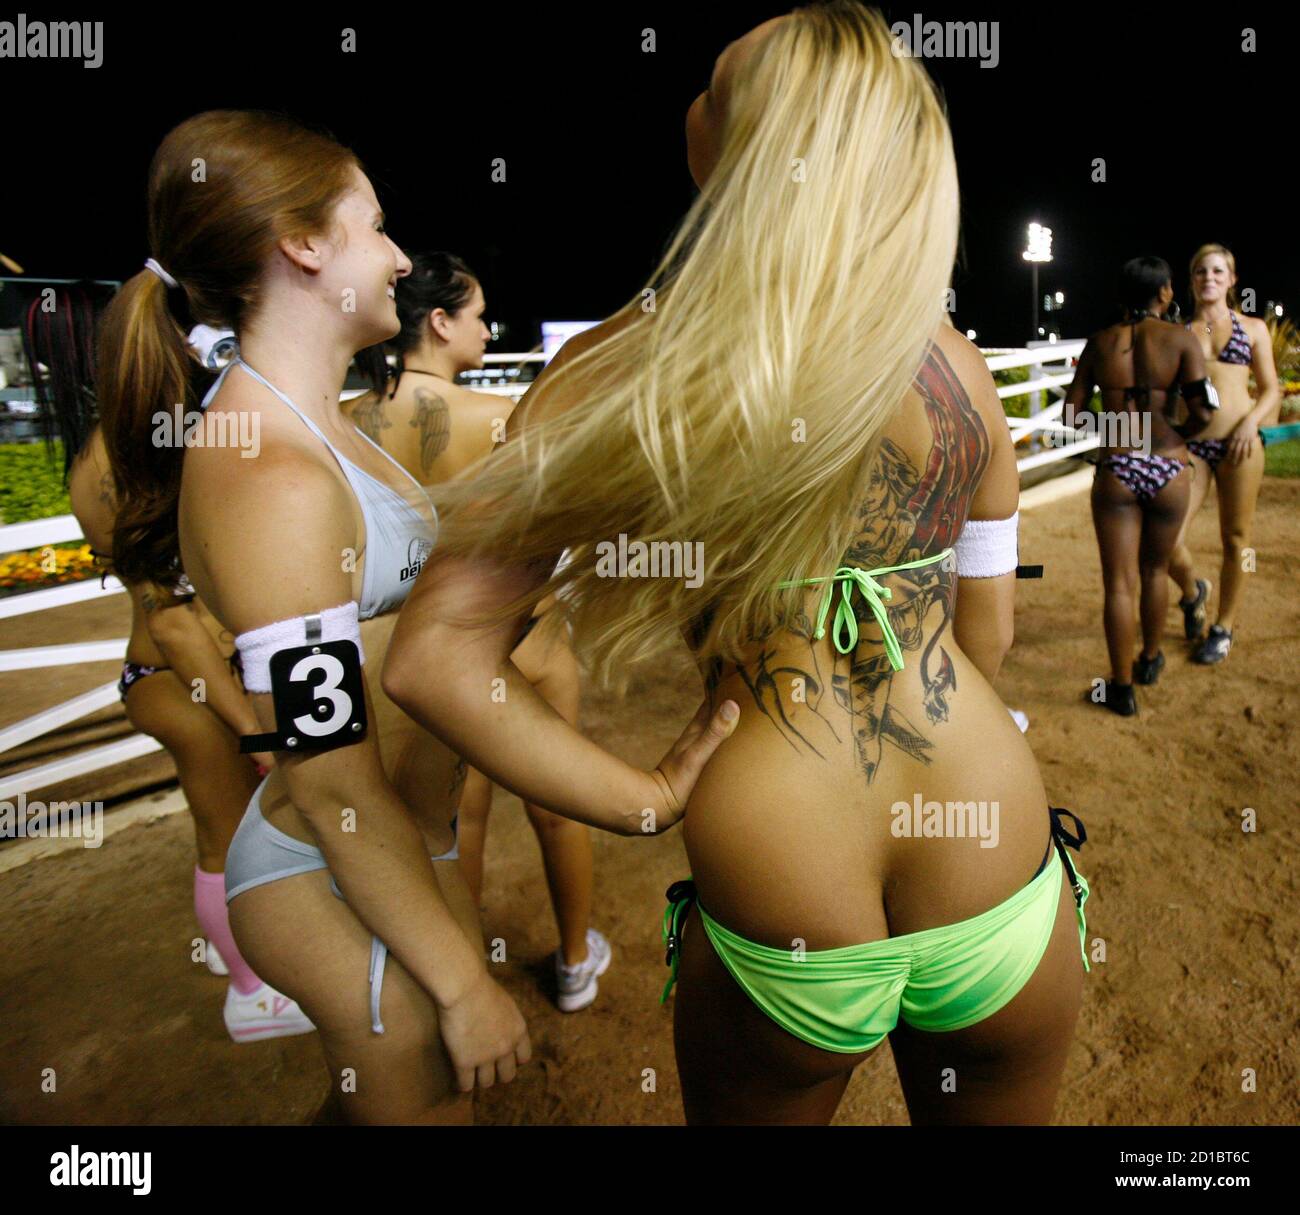 Les participants attendent avant de participer au Poorman's bikini Beach Mile III au Hollywood Park à Inglewood, Californie, le 16 mai 2008. Dans la course de pied annuelle 16 filles courent sur une piste entre les courses de chevaux. REUTERS/Mario Anzuoni (ÉTATS-UNIS) Banque D'Images